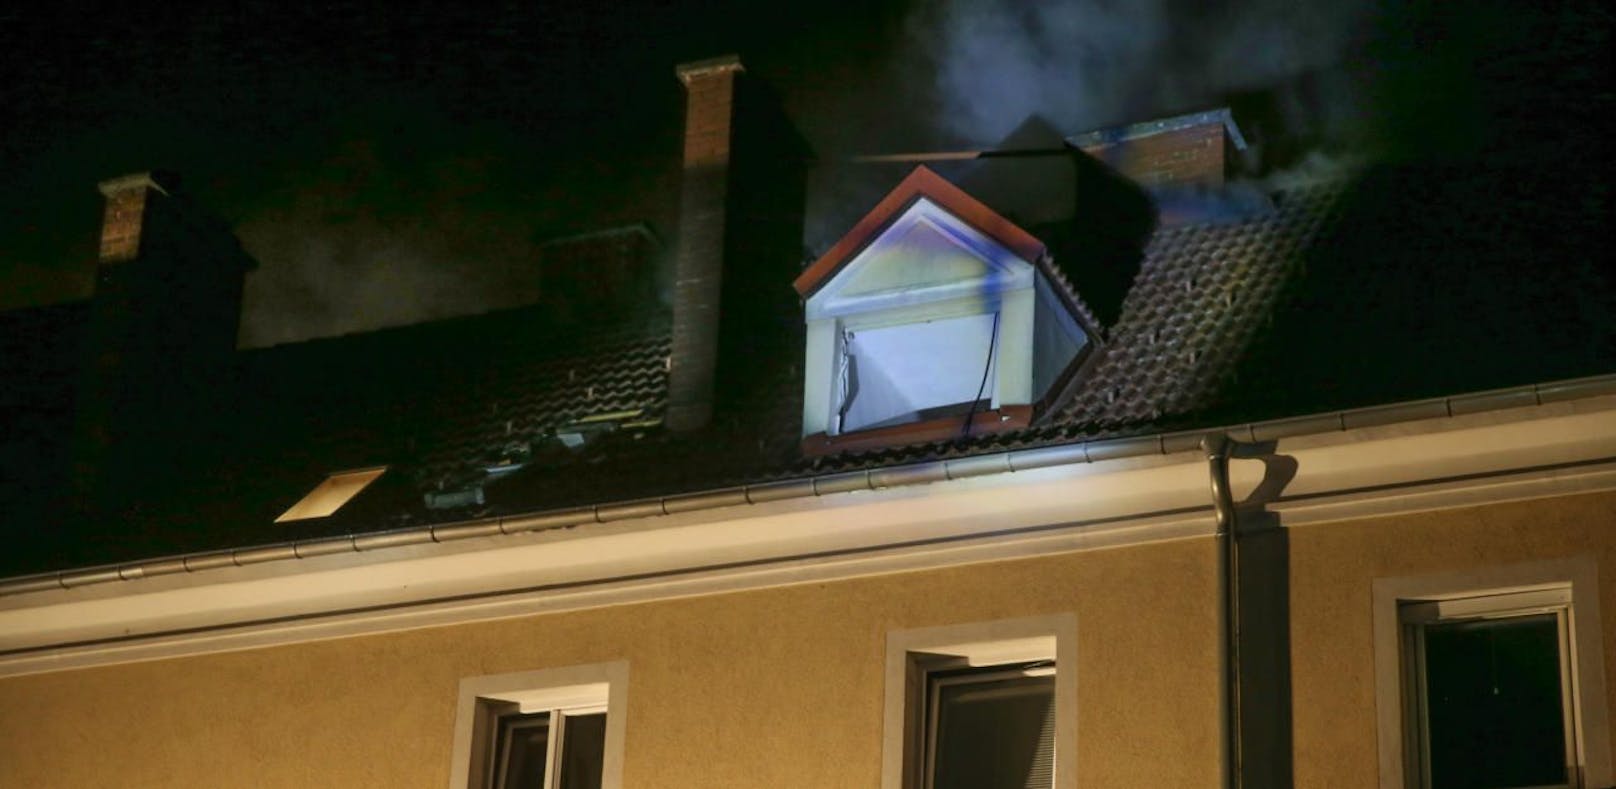 In einer Wohnung in der Linzer Hueberstraße kam es zu einer Gasexplosion.